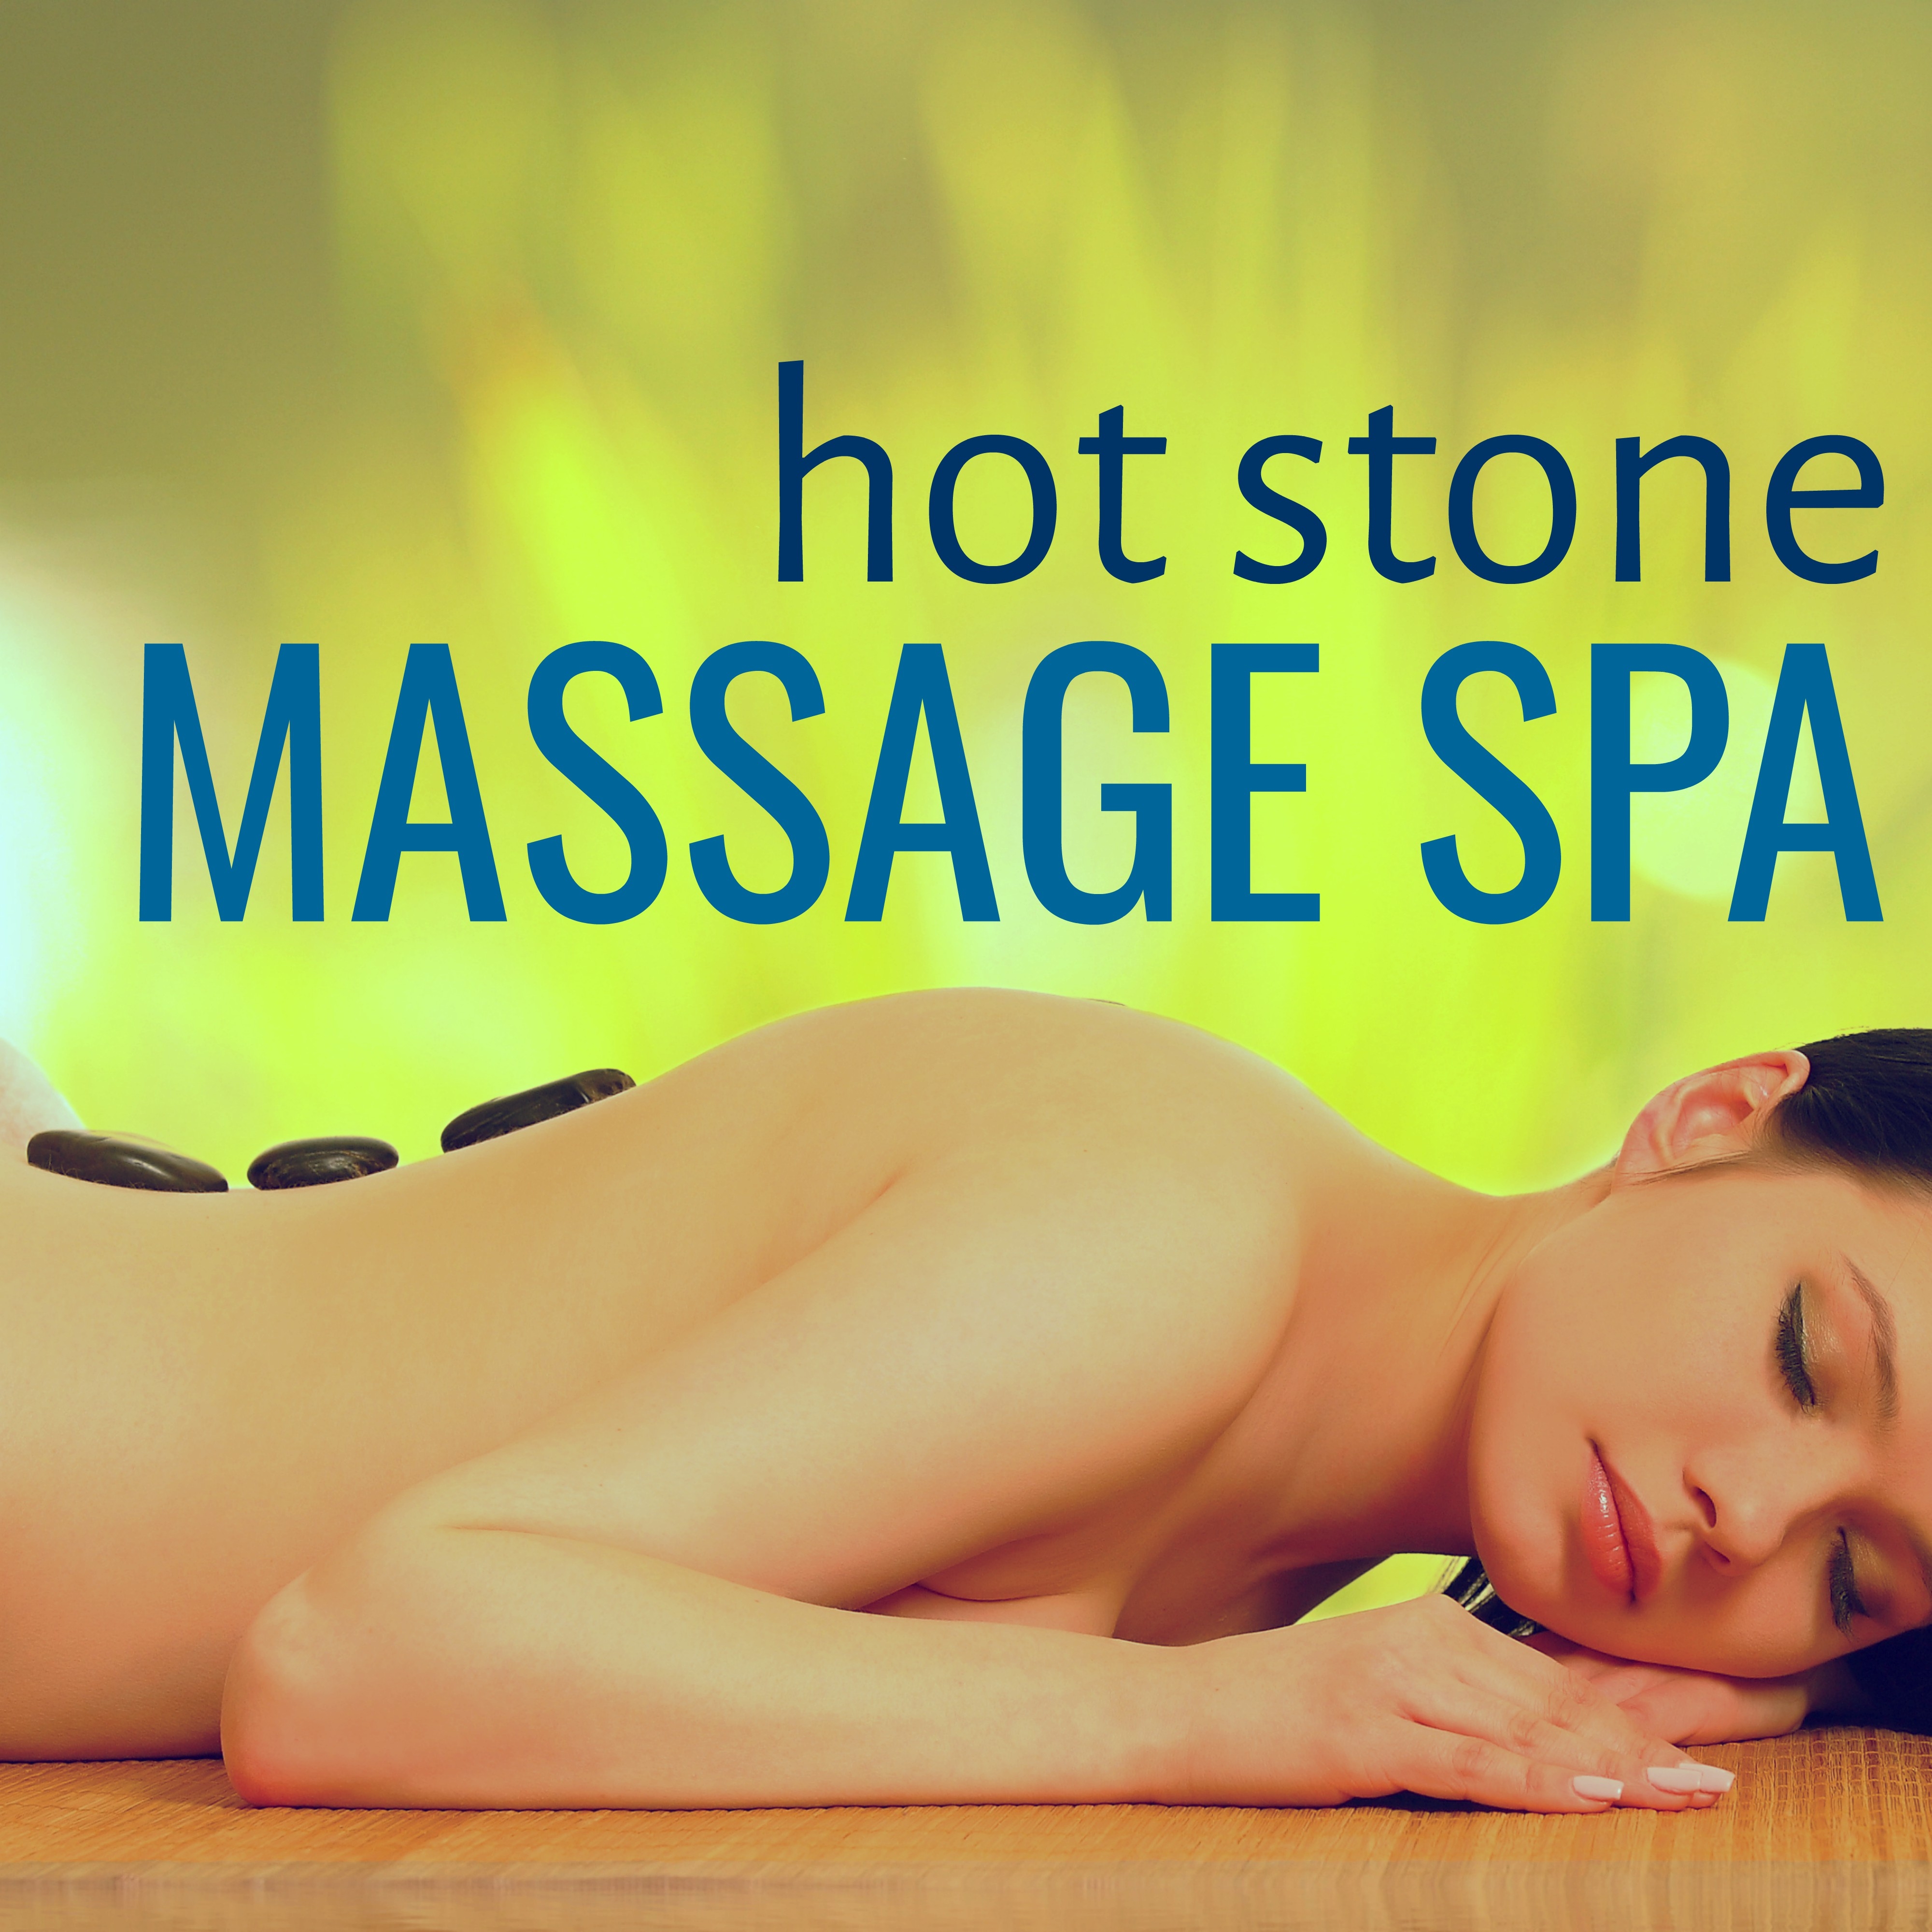 Hot Stone Massage Spa: Musique Relaxante d'Ambiance pour Relaxation et Méditation Spa, Musique Anti Stress pour votre Bien-être